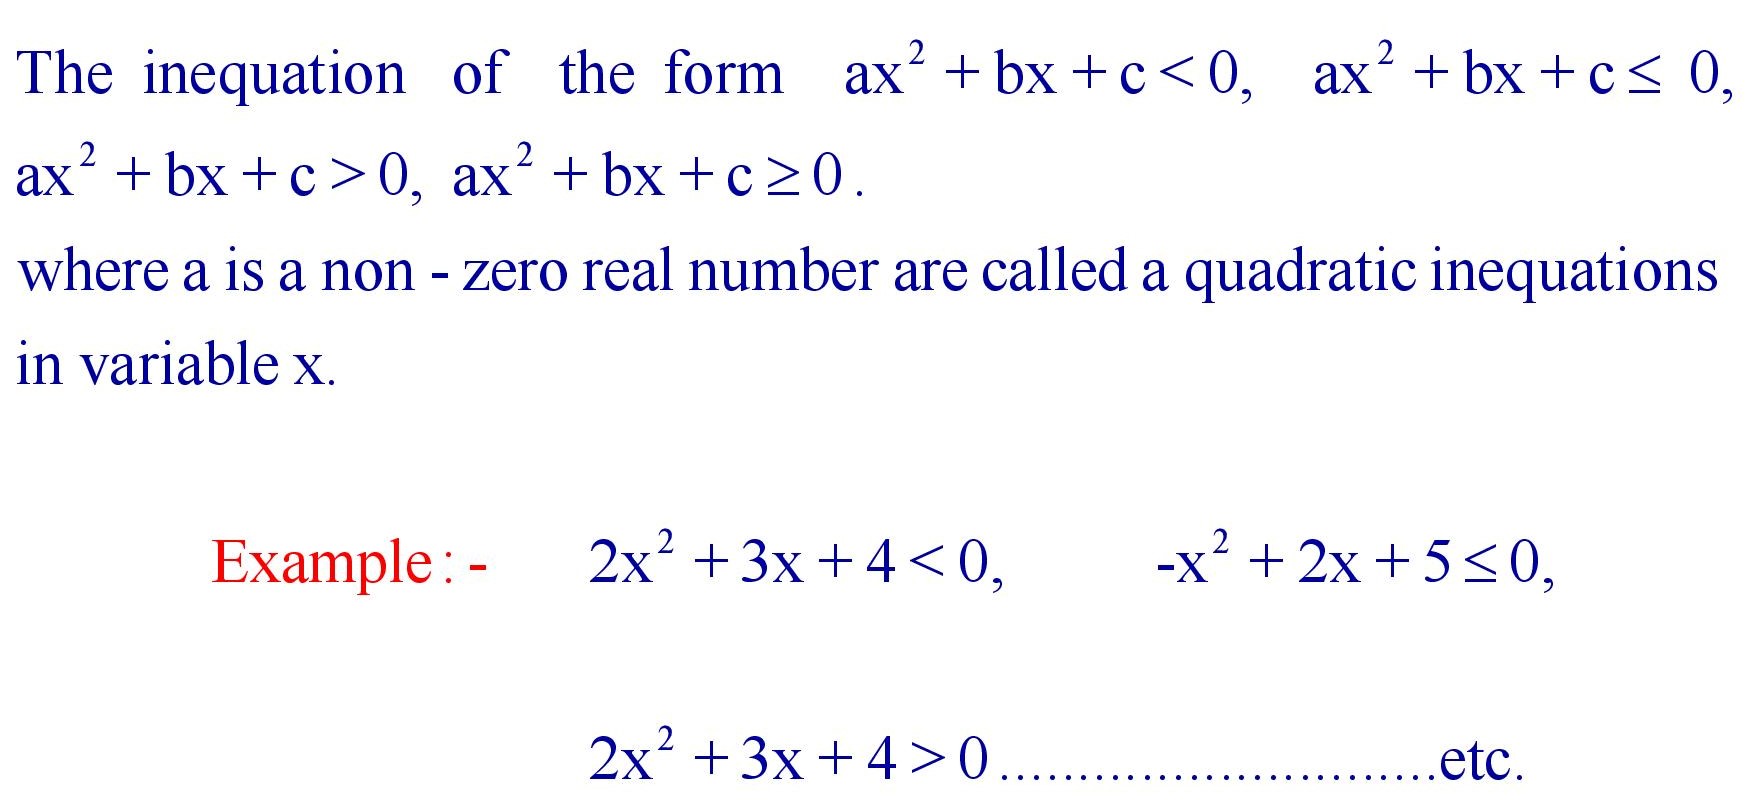 Quadratic Inequations